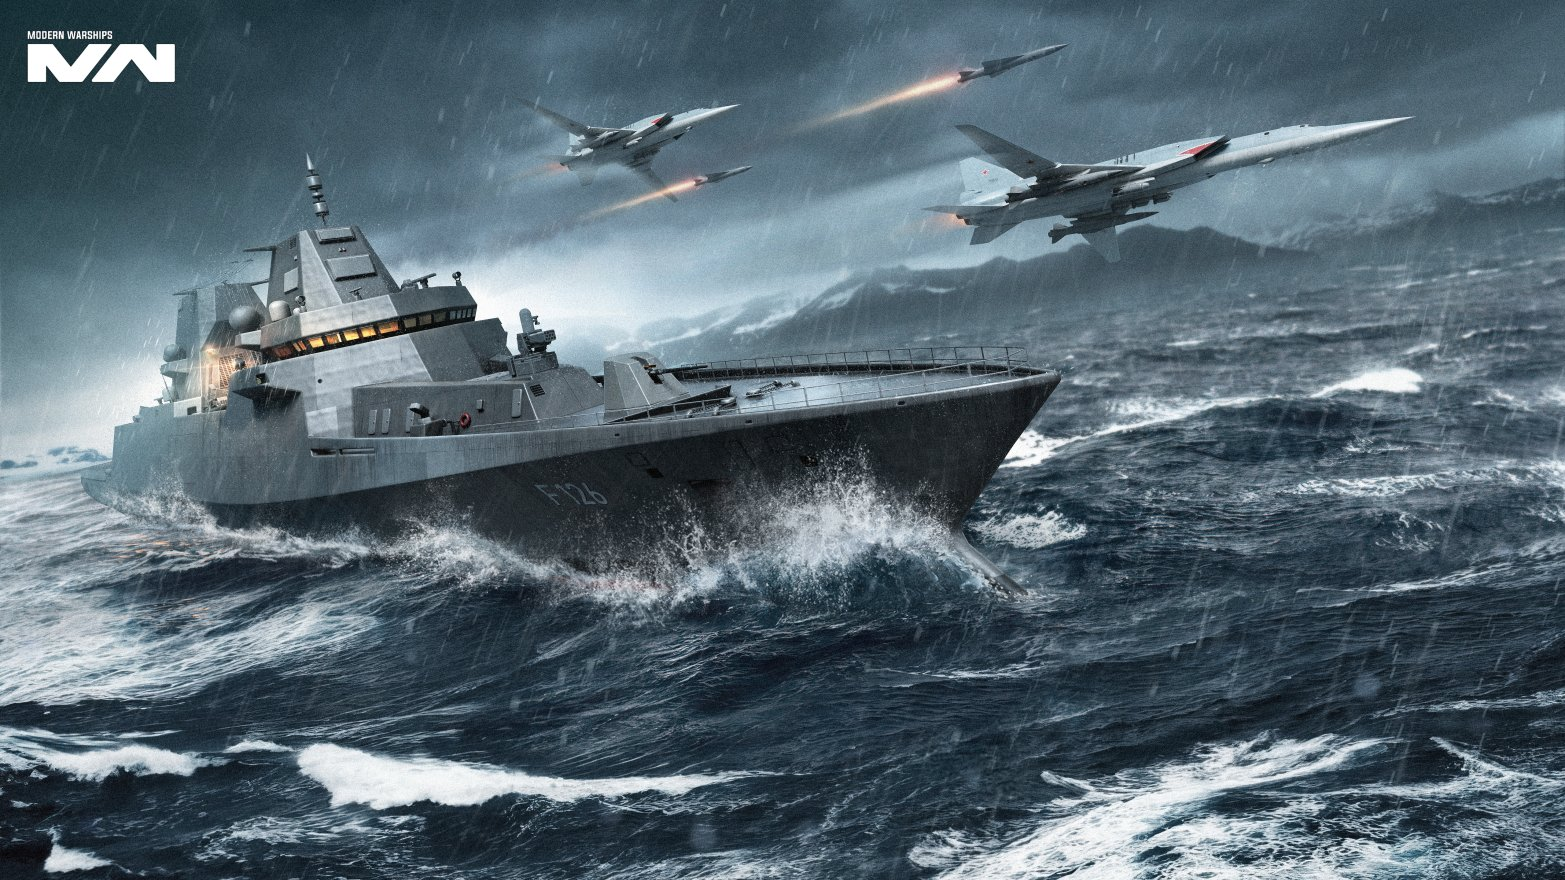 Modern Warships: Naval Battles